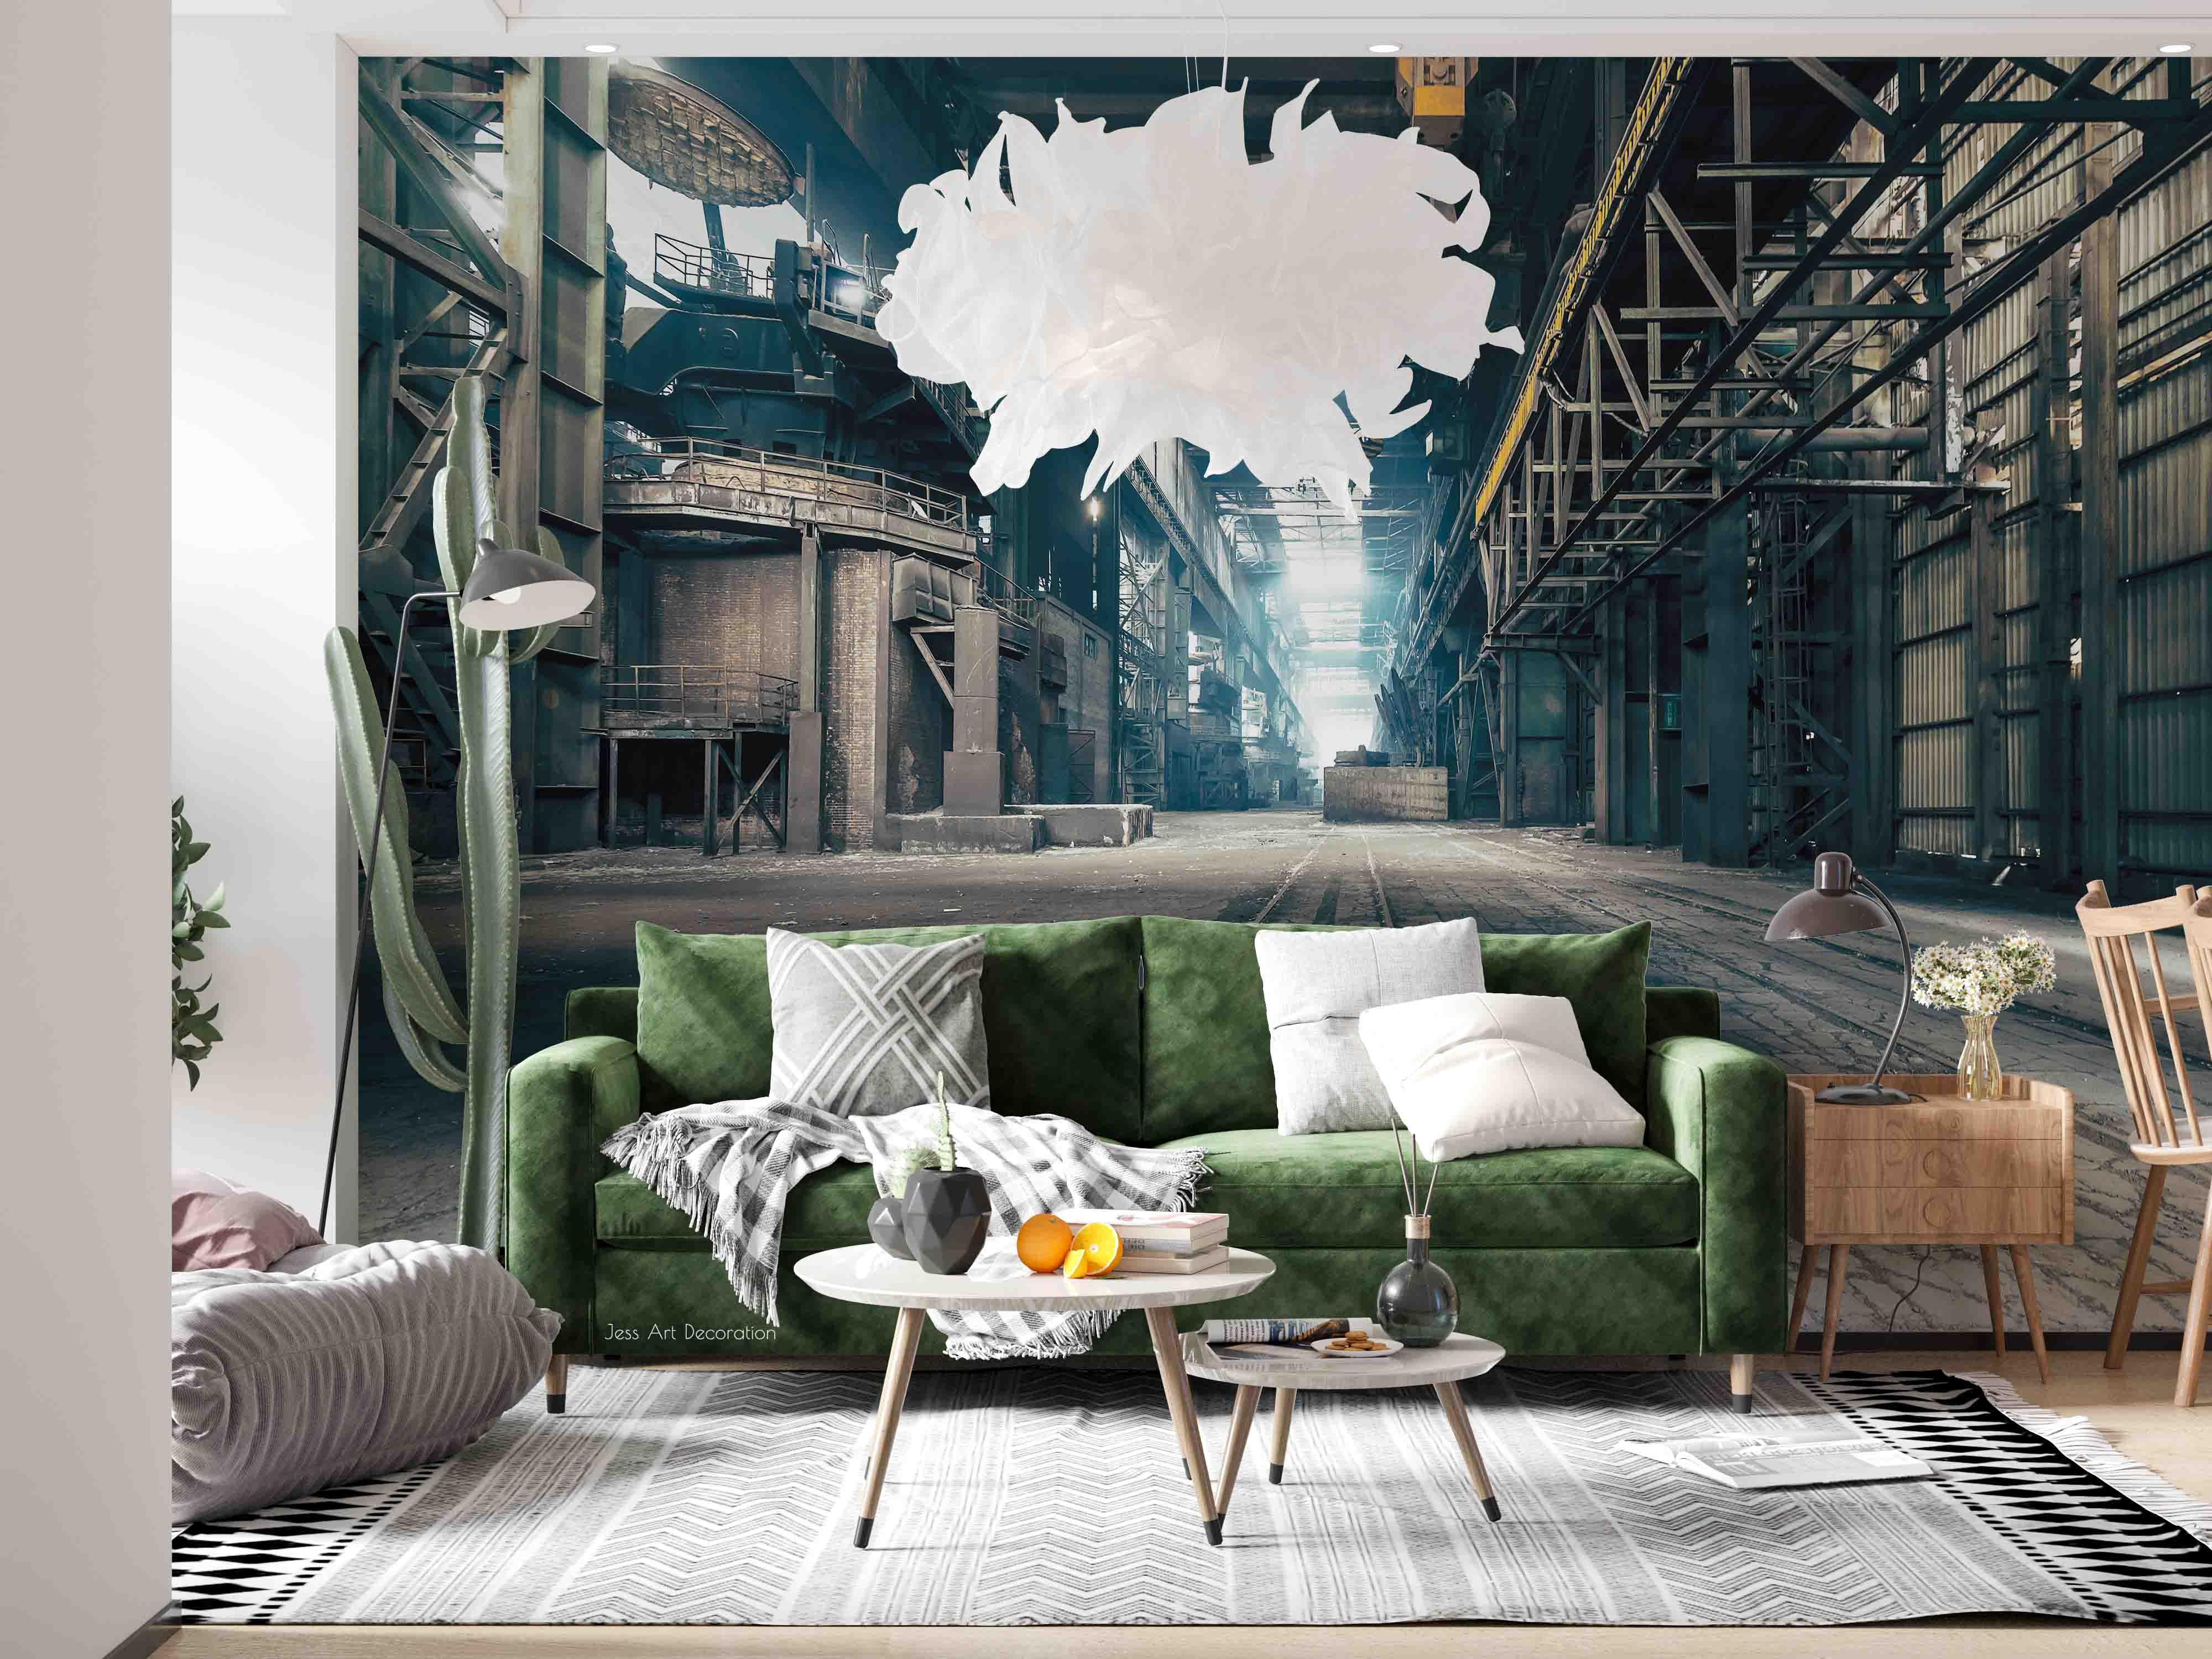 3D Industrial Iron Frame Factory Wall Mural Wallpaper GD 2700- Jess Art Decoration